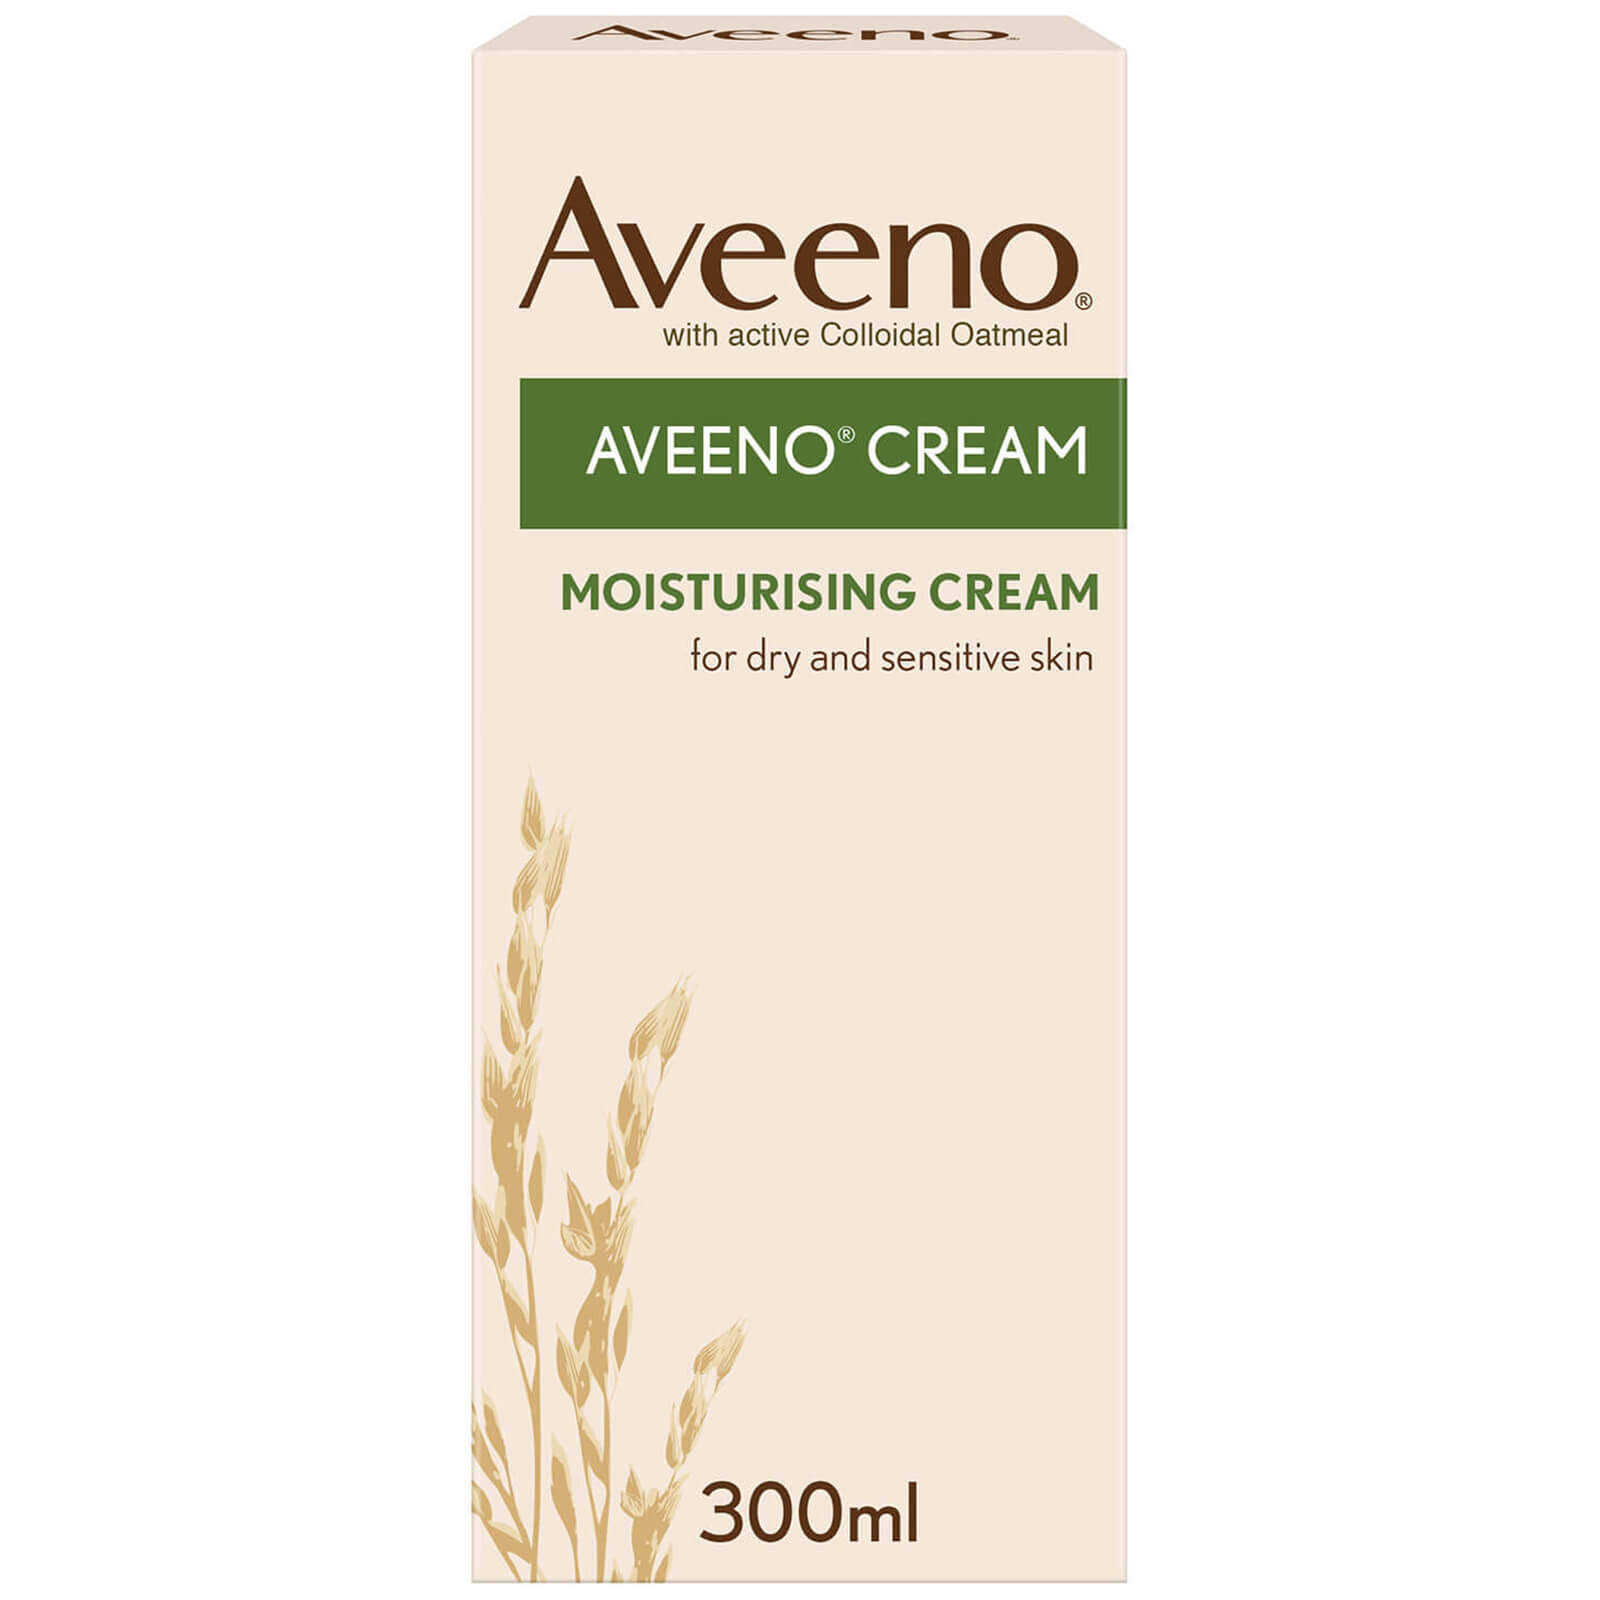 Aveeno Cream Moisturising Cream - 300ml